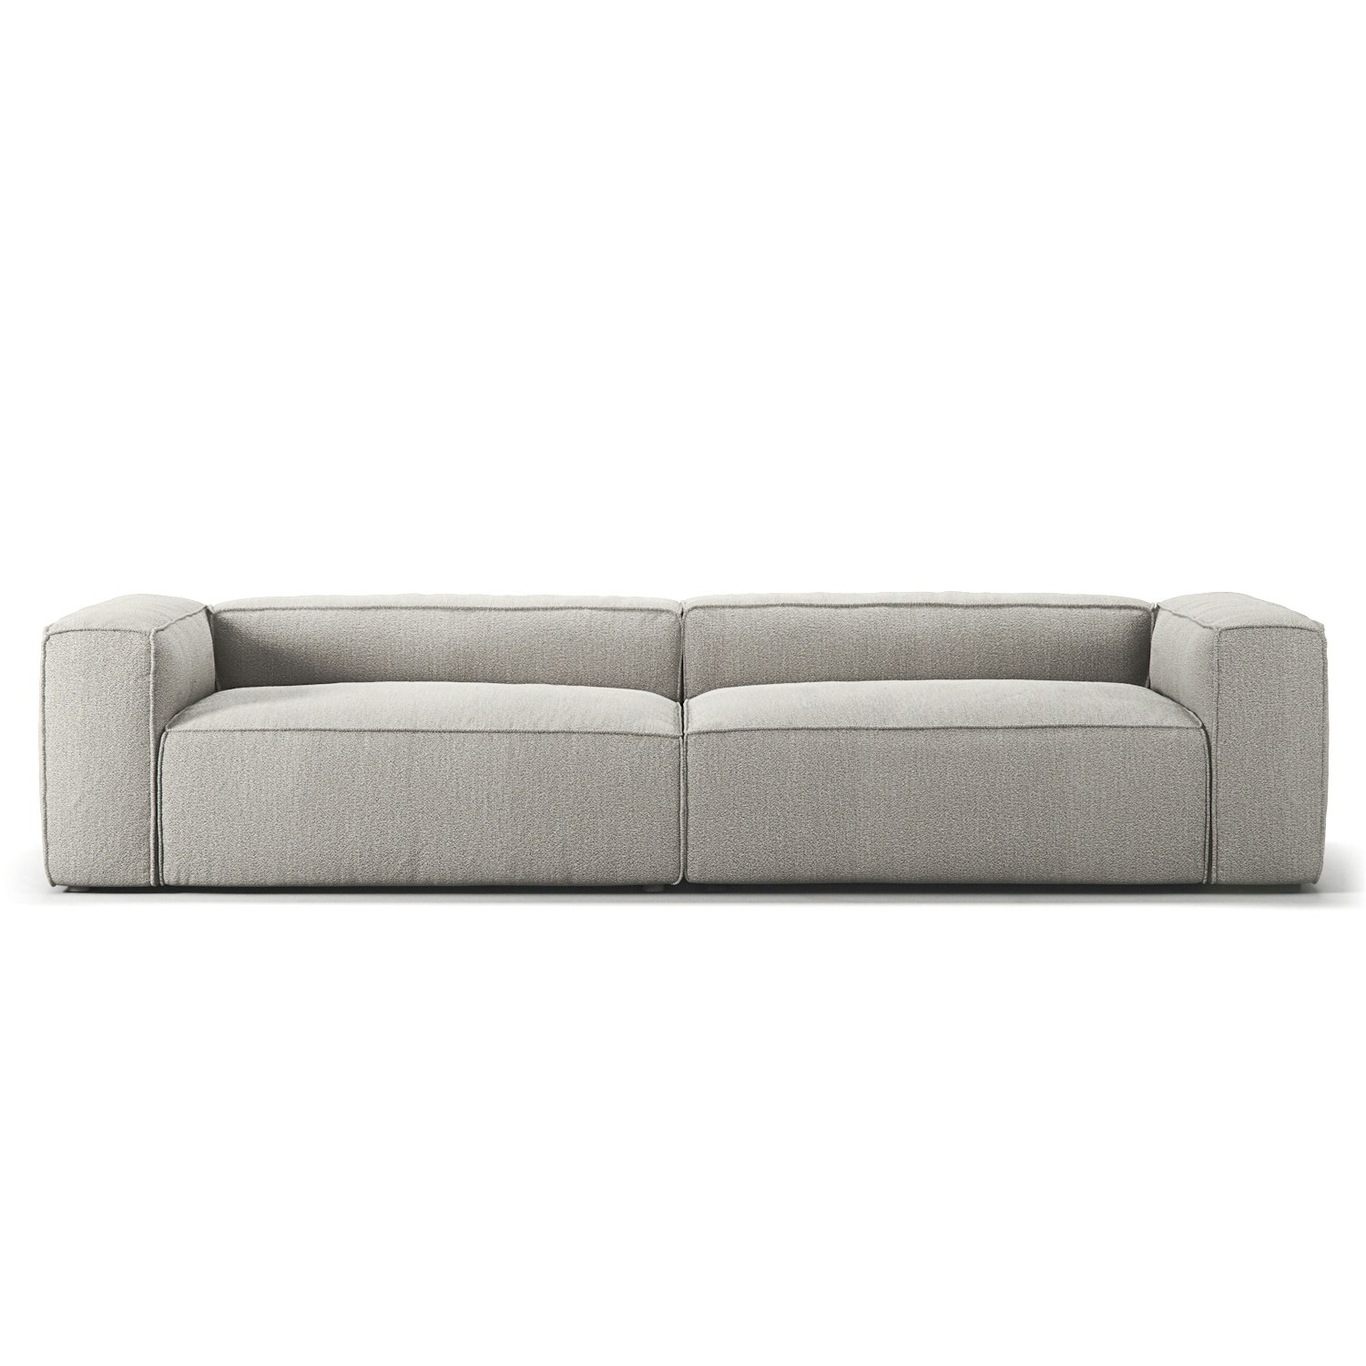 Grand 4-Seter Sofa, Clay Beige